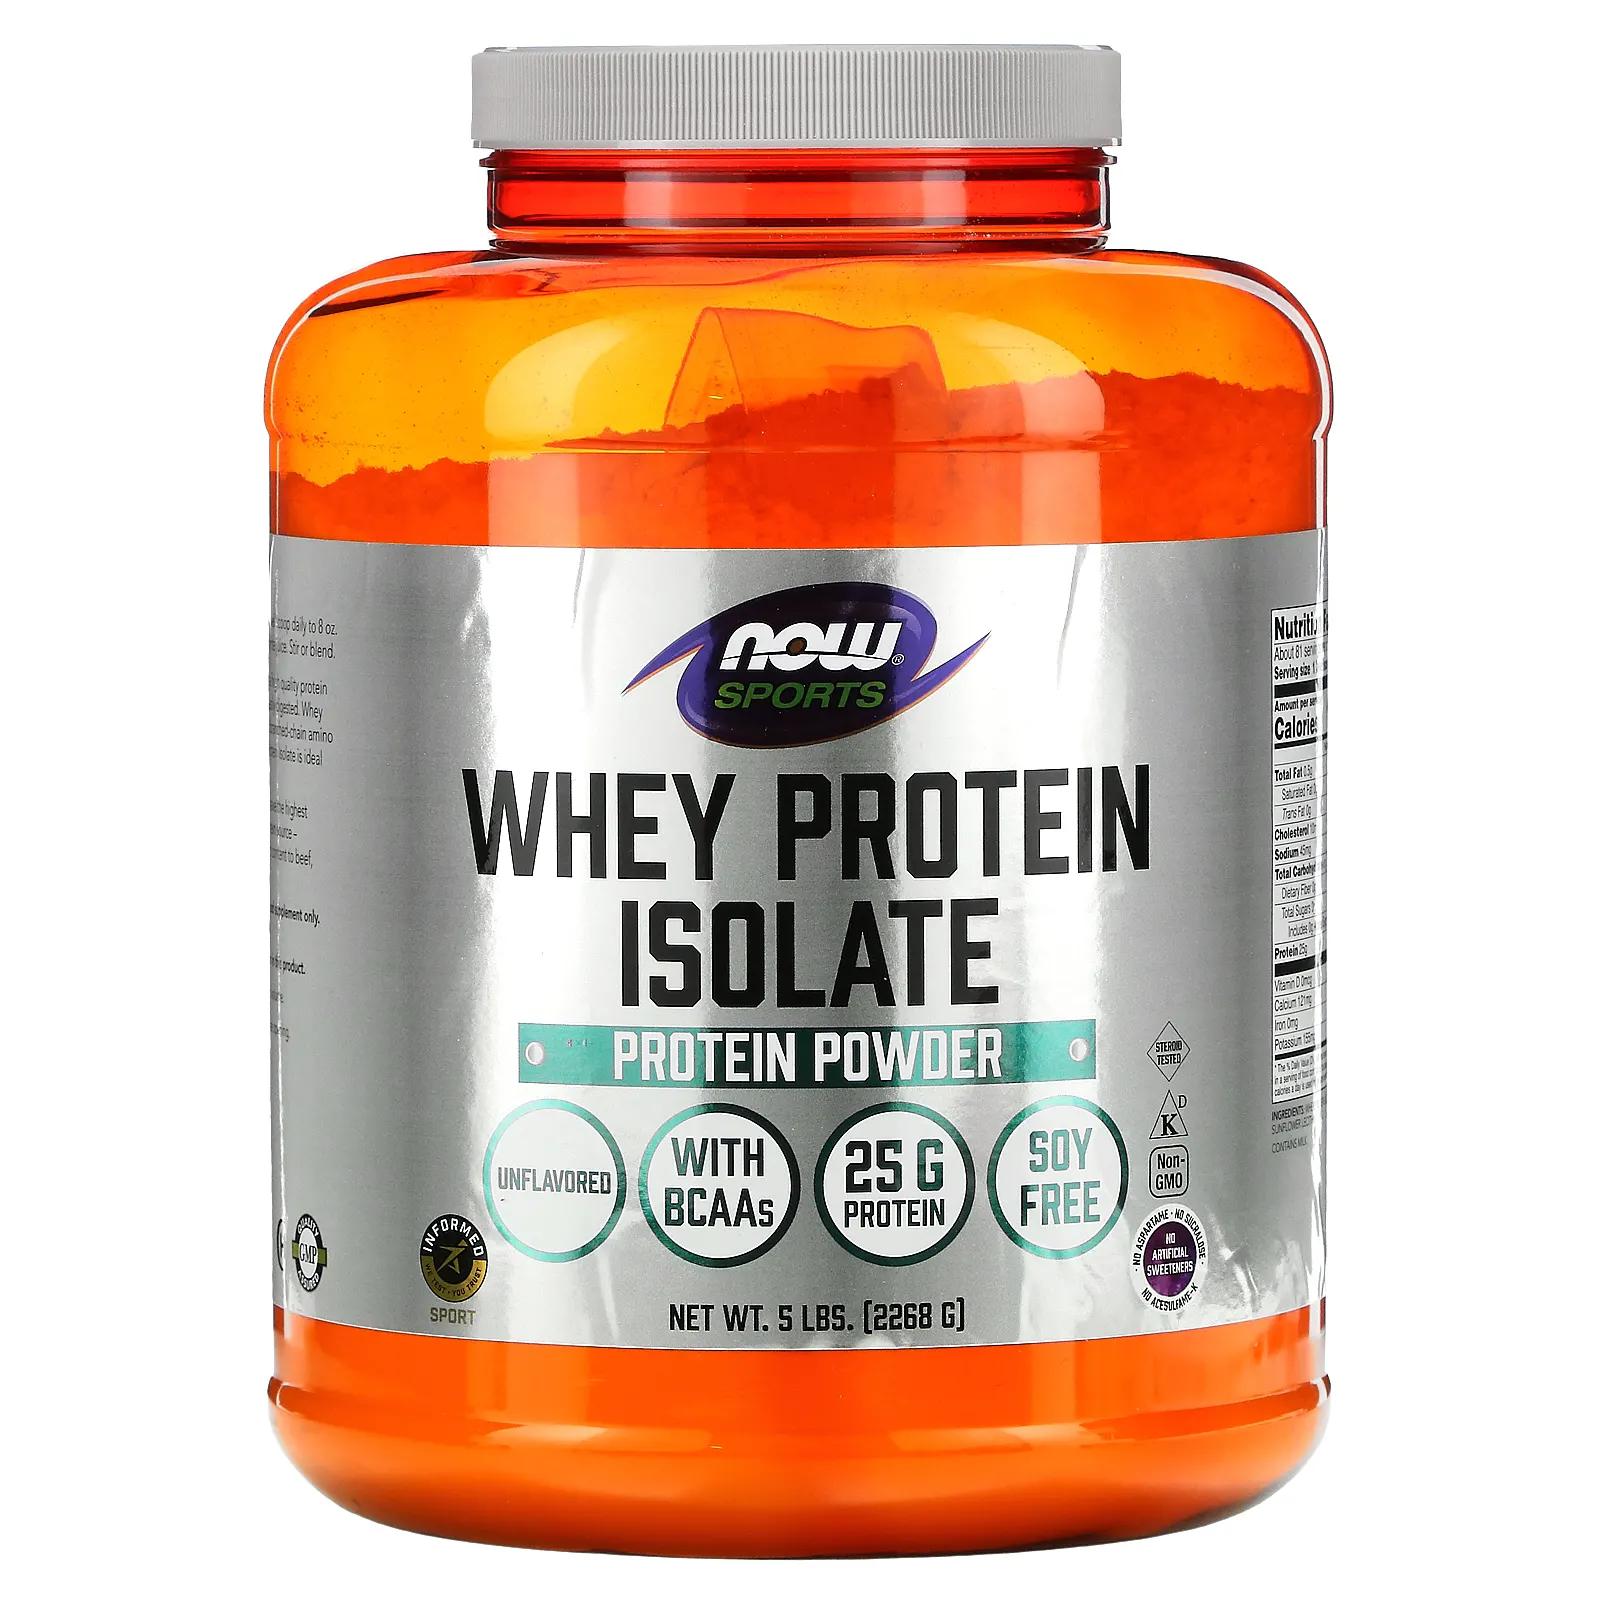 Now Foods Изолят сывороточного протеина для спортсменов с натуральным вкусом 5 фунтов (2268 г) now foods спорт изолят сывороточного протеина натуральная ваниль 5 фунтов 2268 г